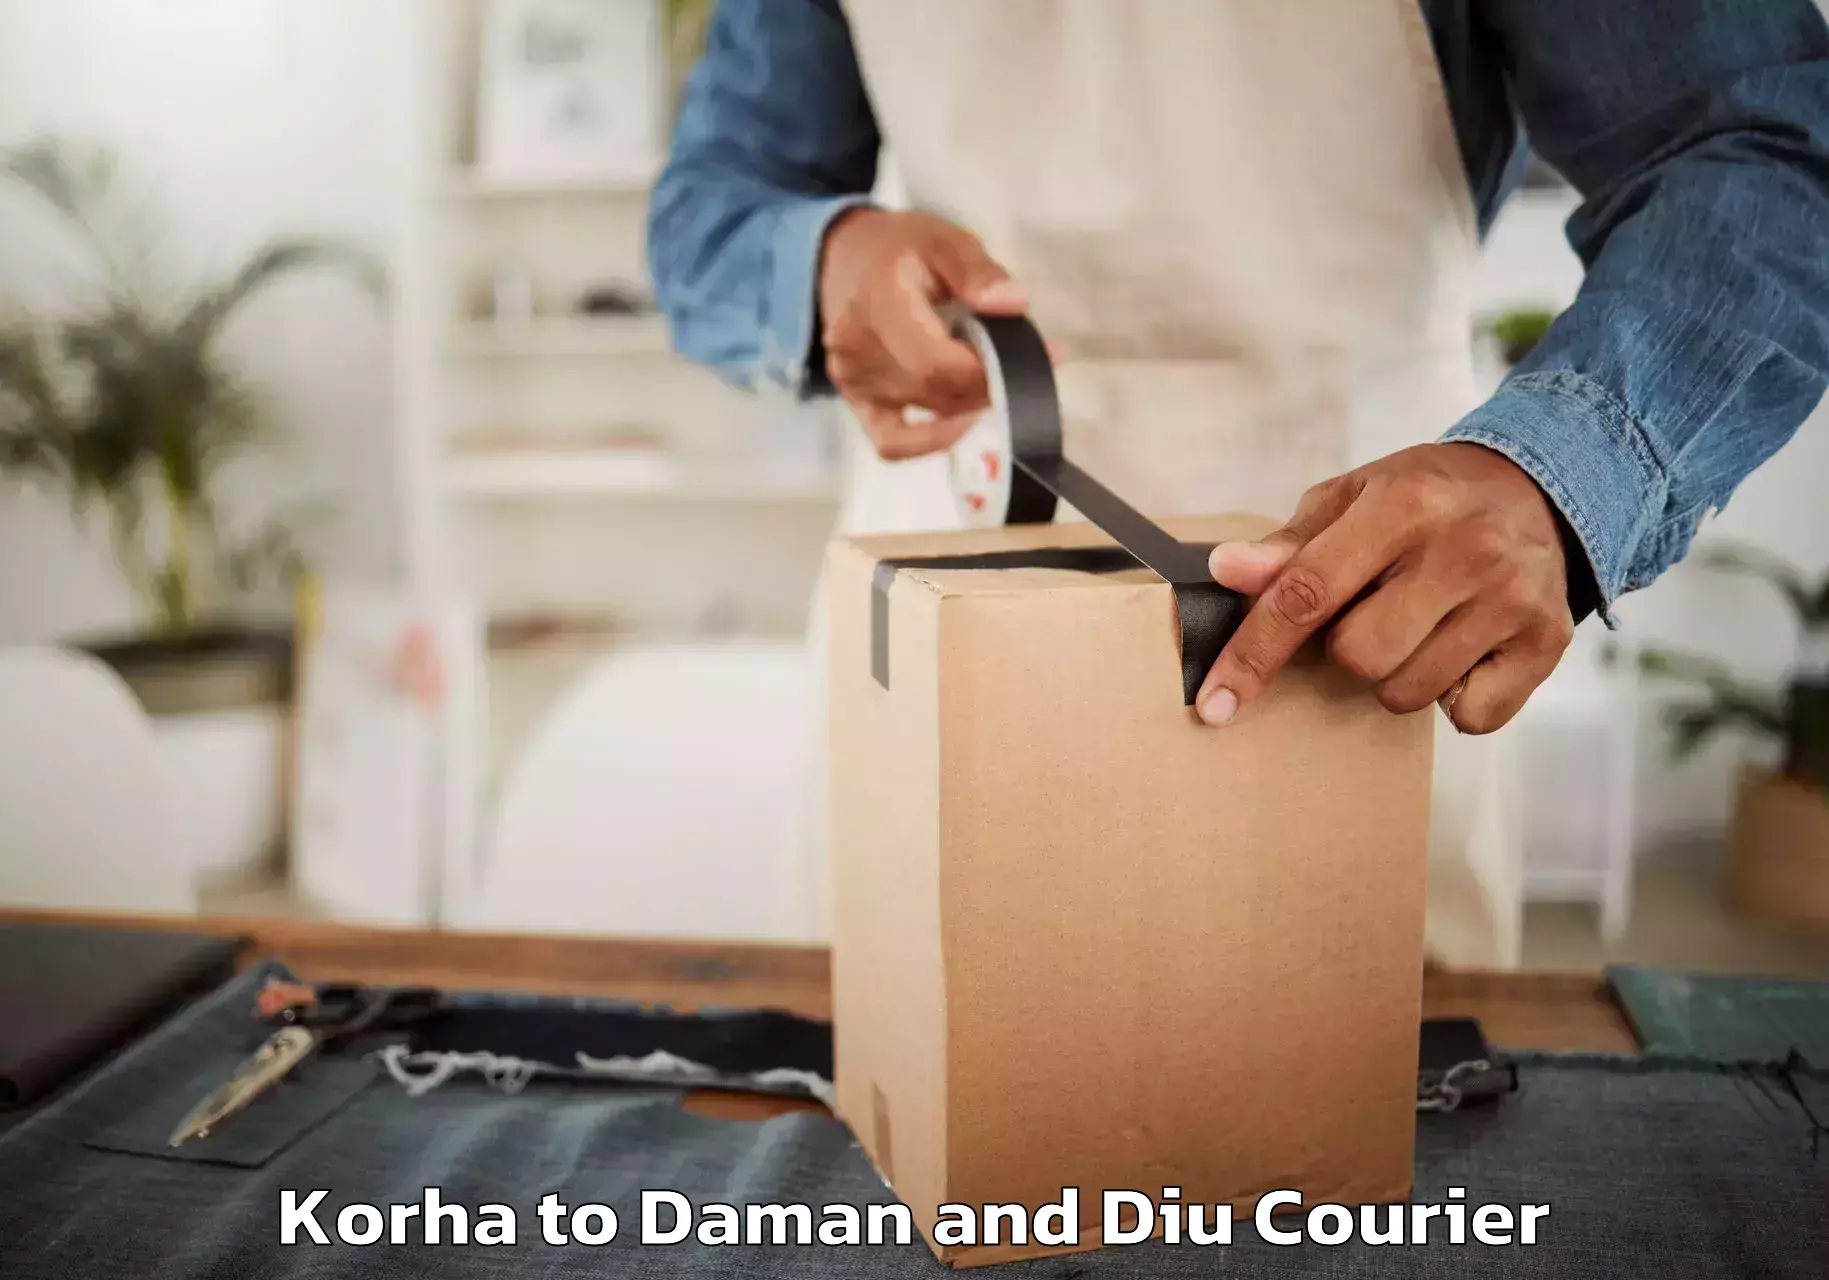 Reliable furniture movers Korha to Daman